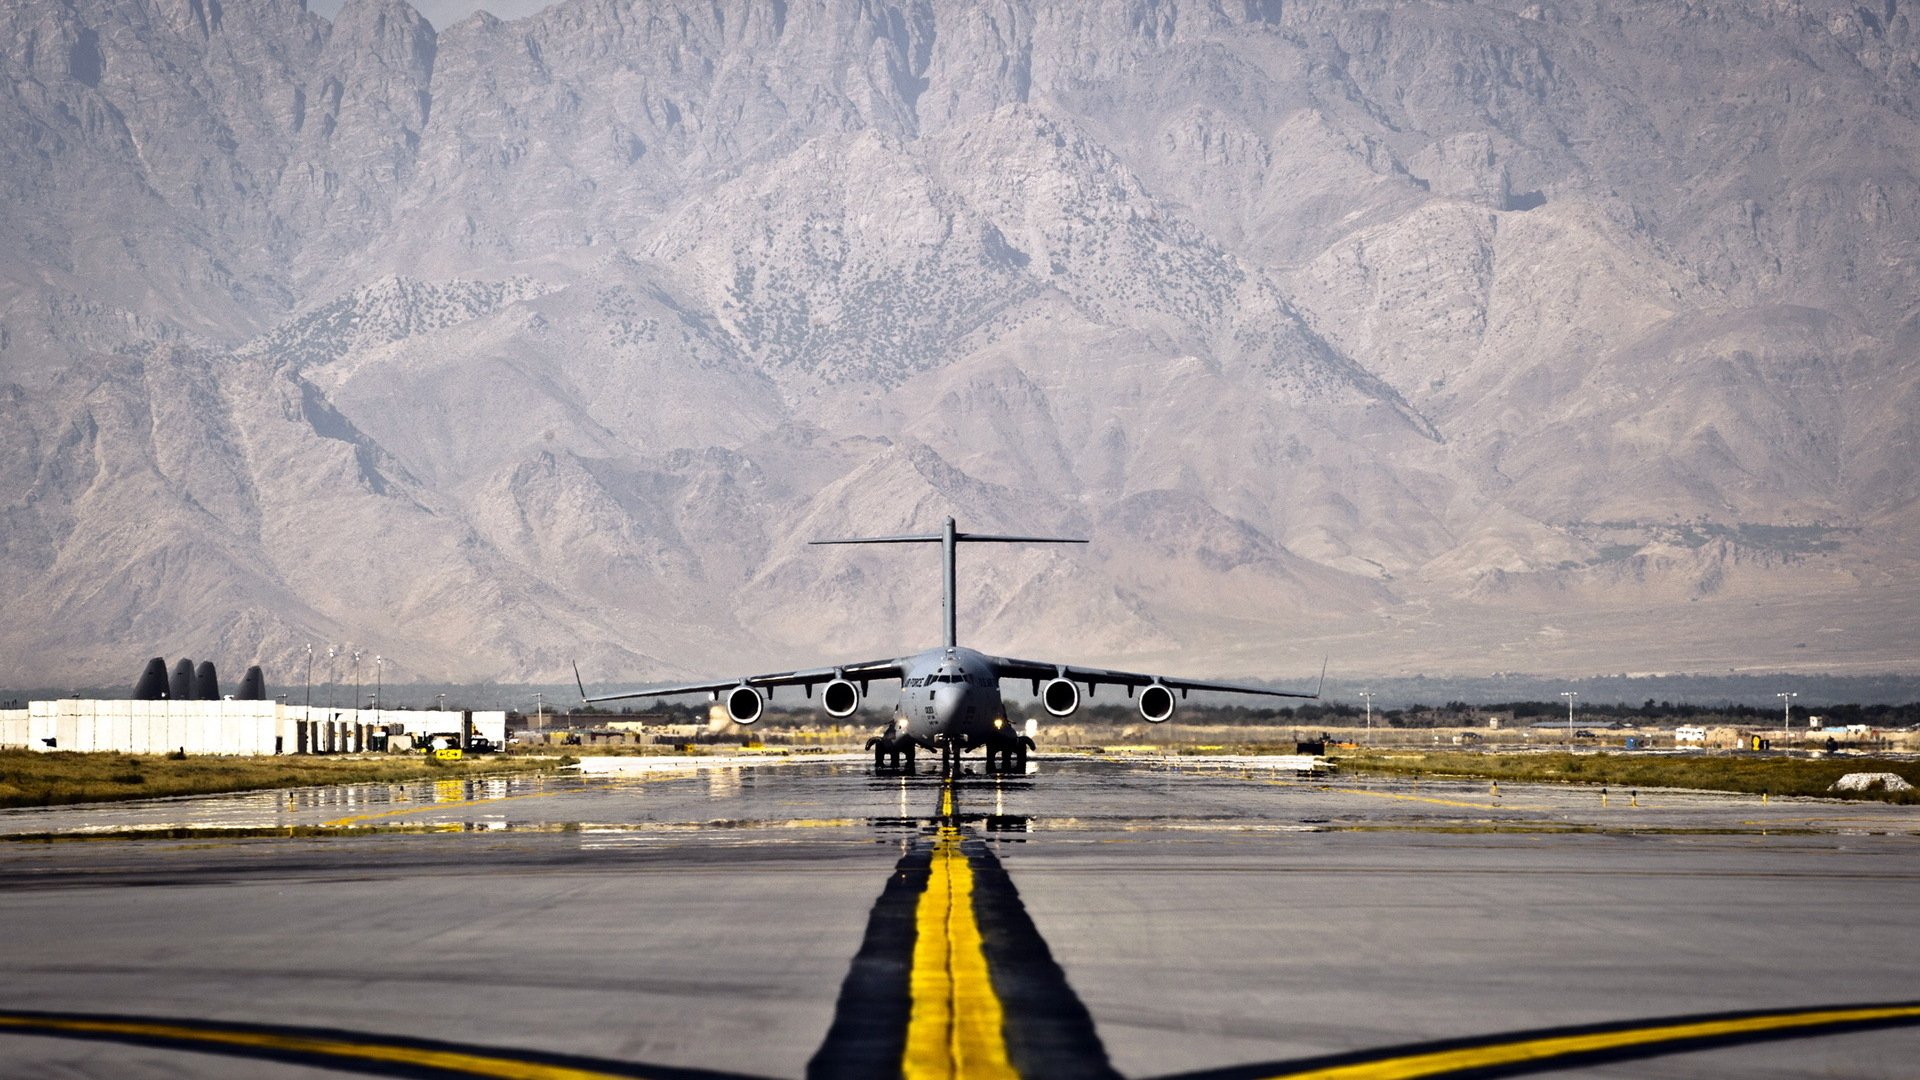 Hd Wallpaper - Baf Bagram Airfield Afghanistan , HD Wallpaper & Backgrounds